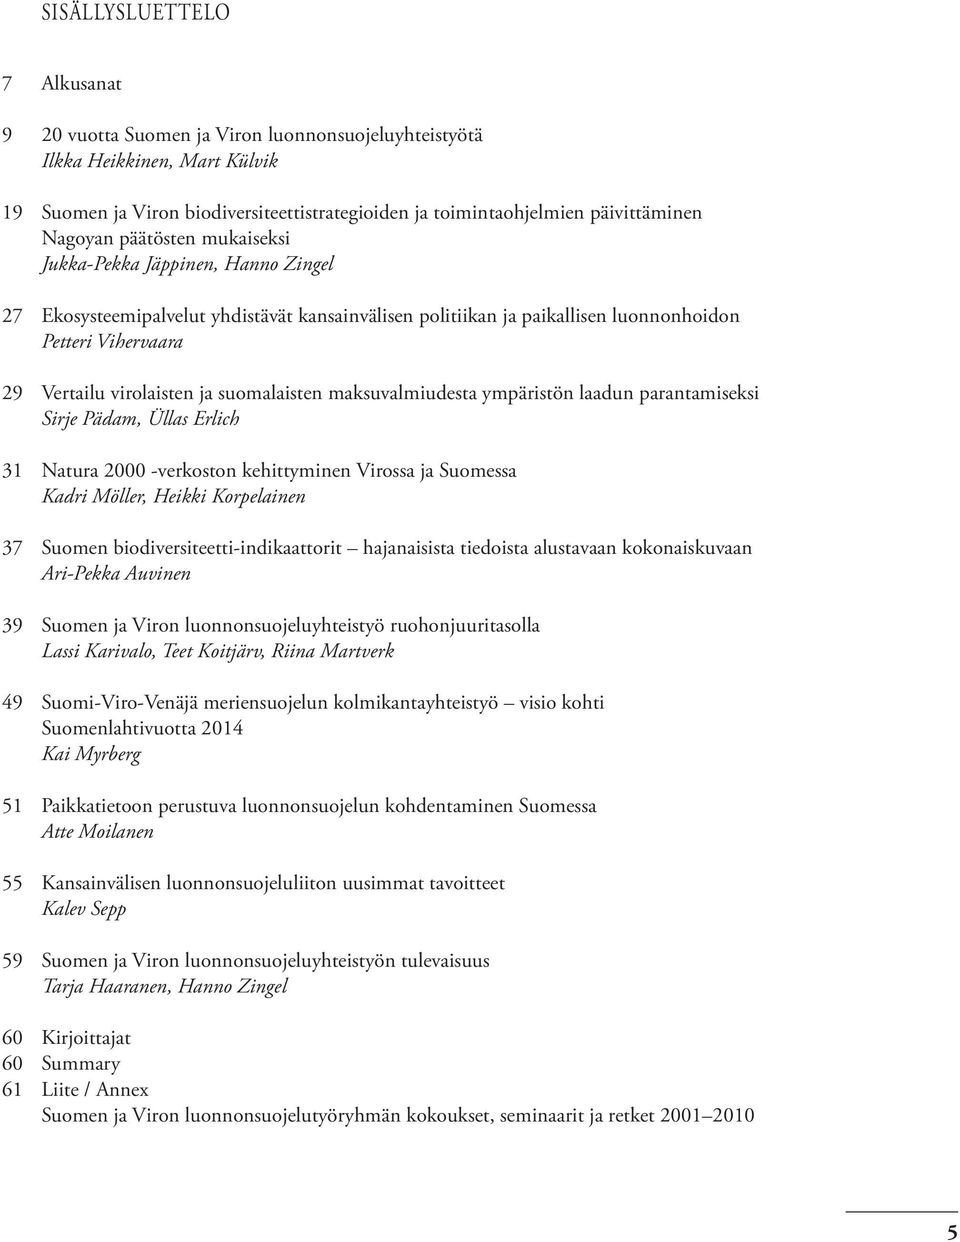 suomalaisten maksuvalmiudesta ympäristön laadun parantamiseksi Sirje Pädam, Üllas Erlich 31 Natura 2000 -verkoston kehittyminen Virossa ja Suomessa Kadri Möller, Heikki Korpelainen 37 Suomen